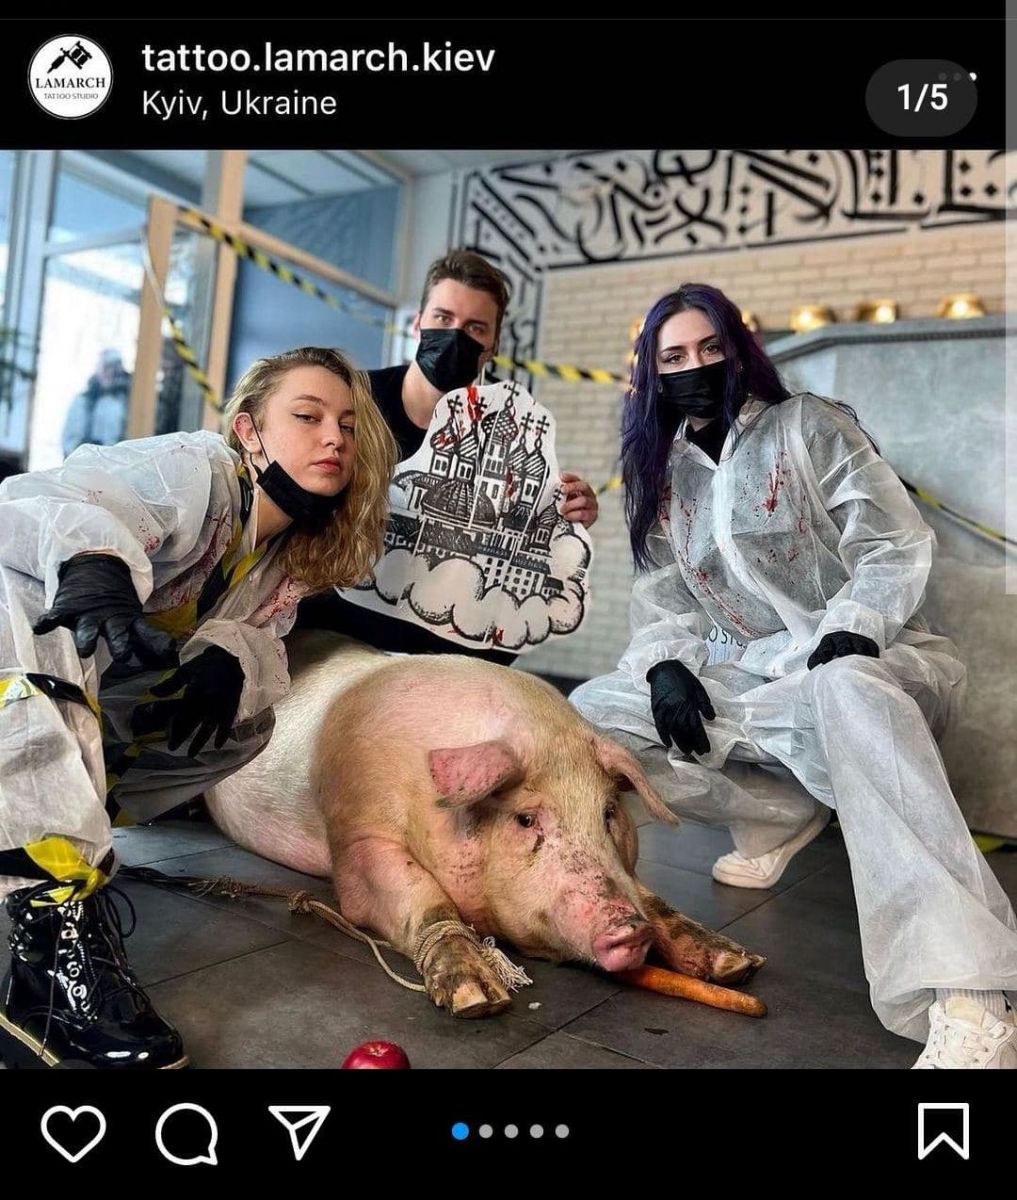 Набить купола на свинье – в тату-салон в Киеве привели животное